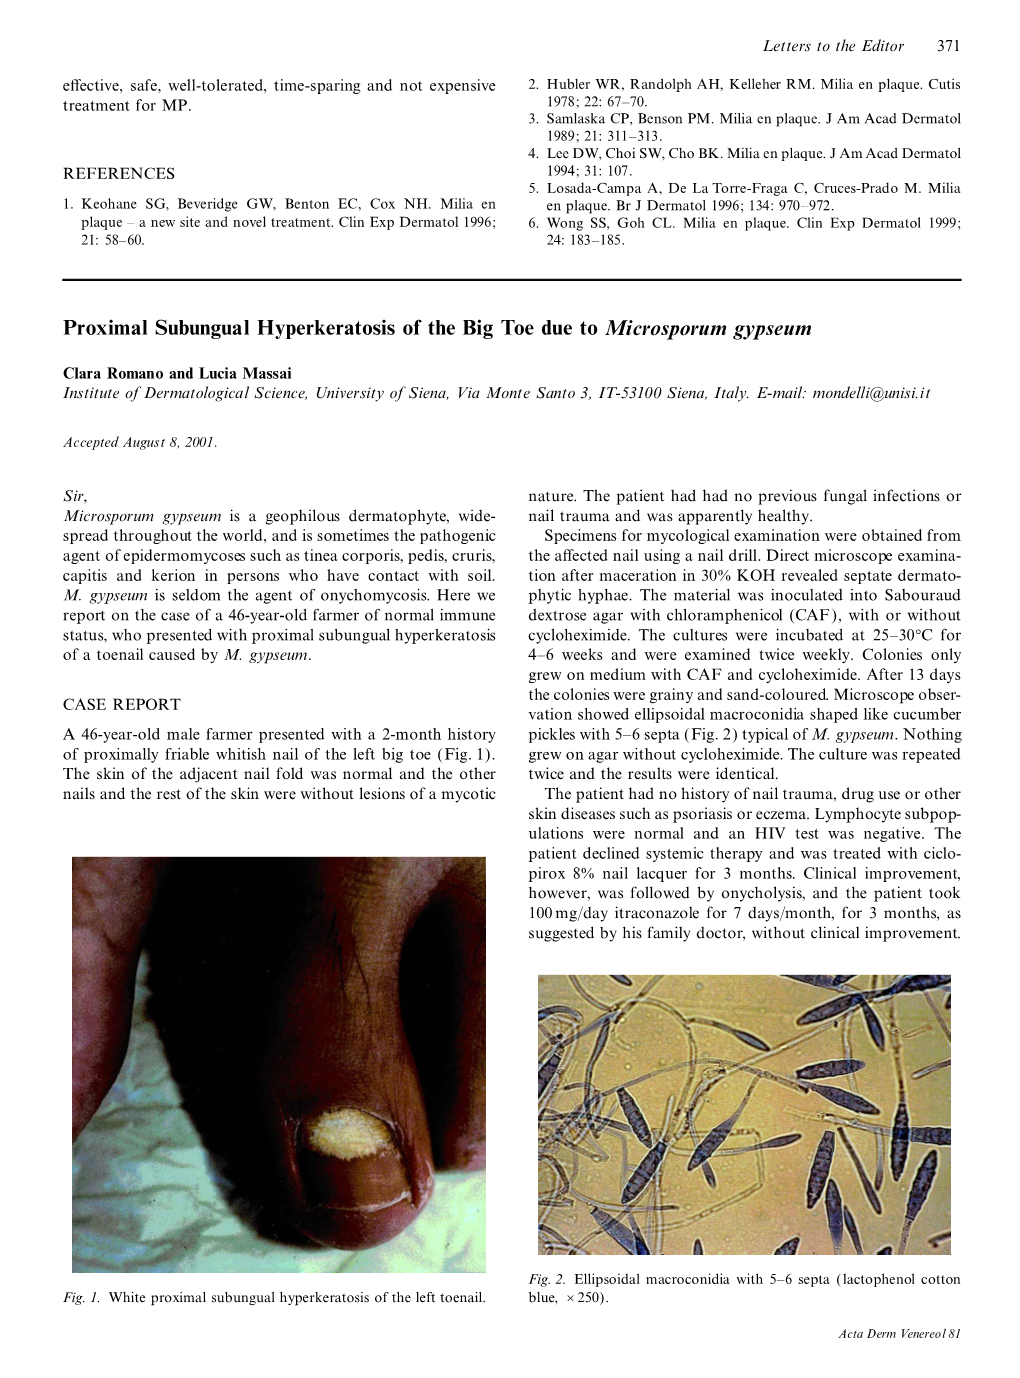 Proximal Subungual Hyperkeratosis of the Big Toe Due to Microsporum Gypseum